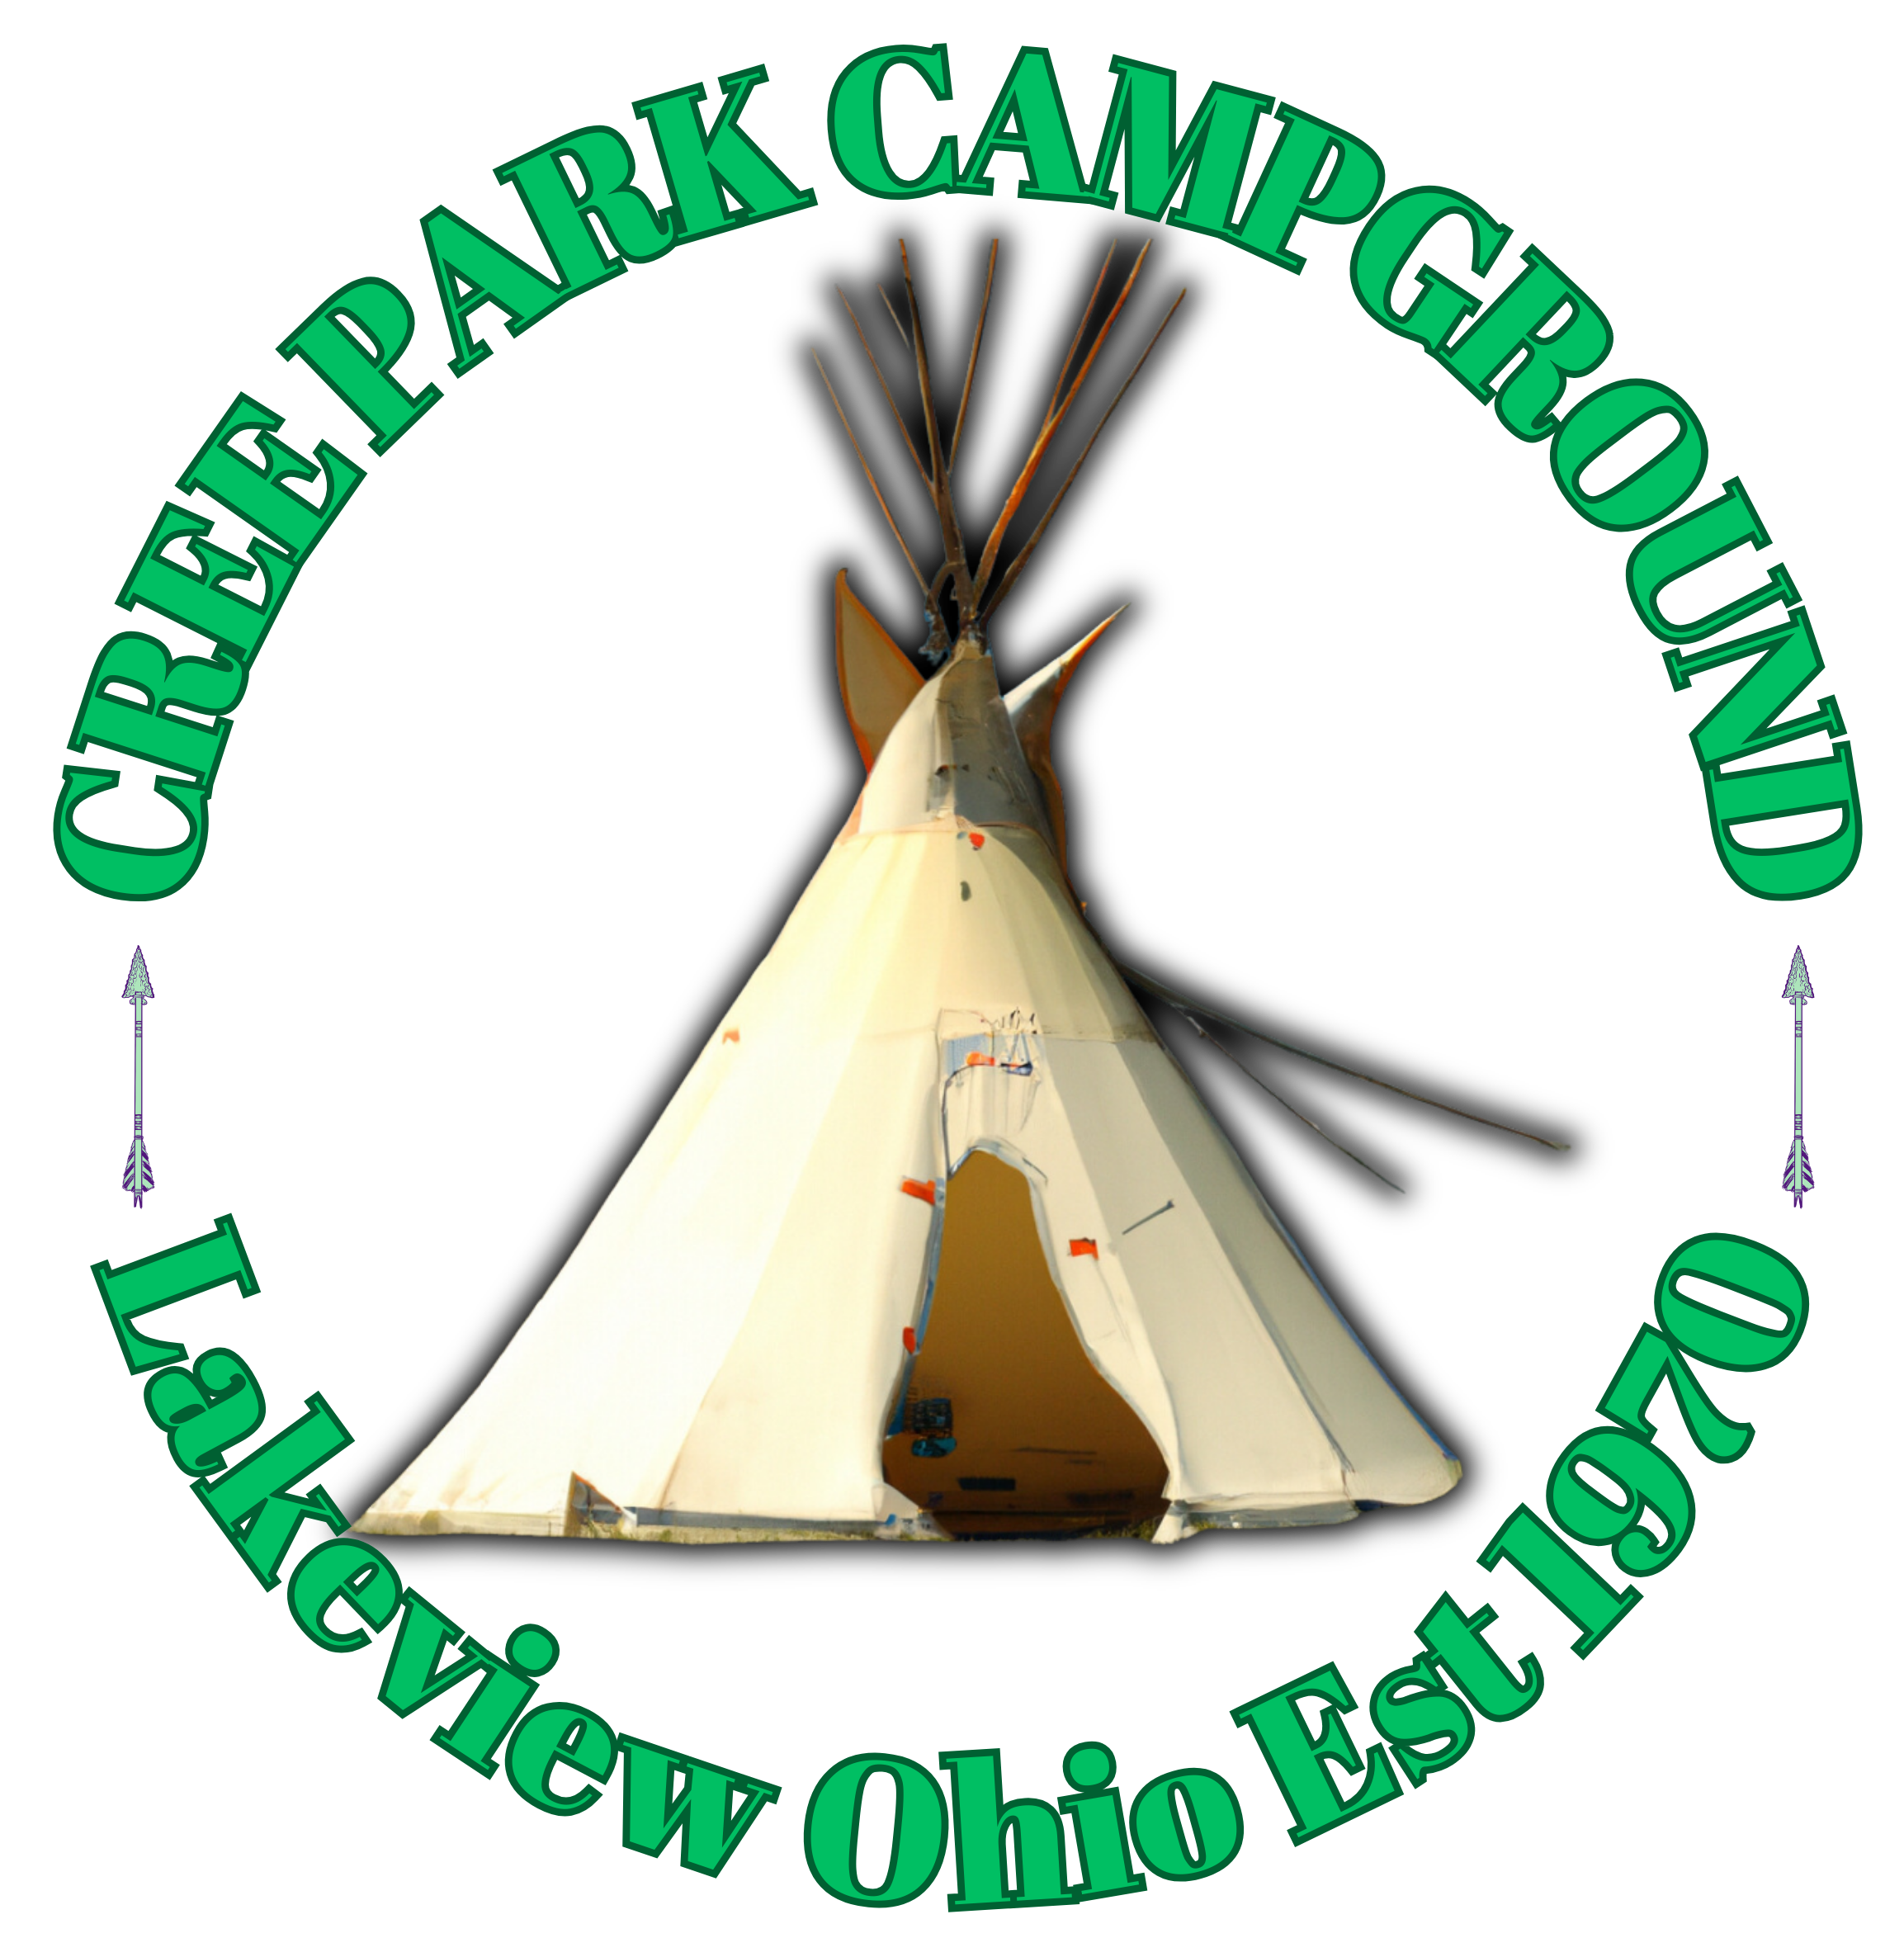 Cree Park CampgrounD